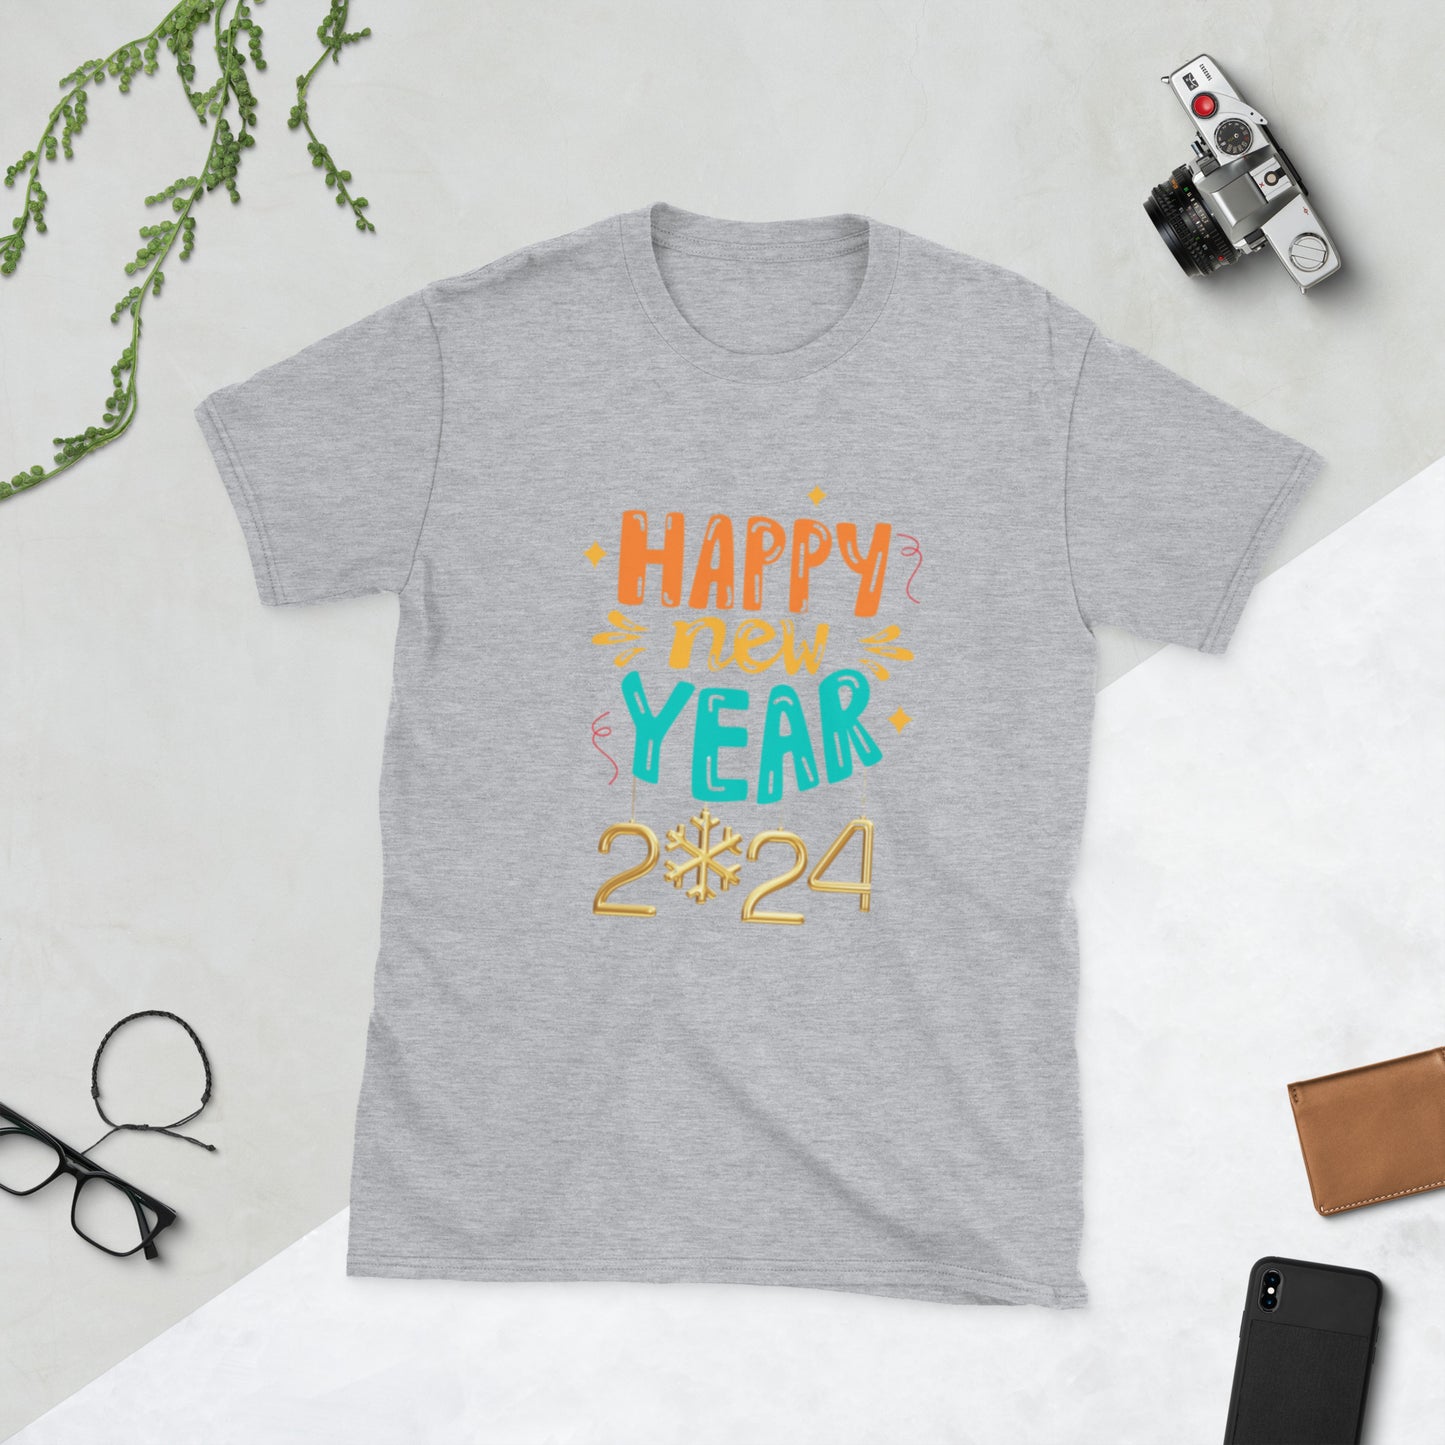 New Year 2024 Short-Sleeve Unisex T-Shirt